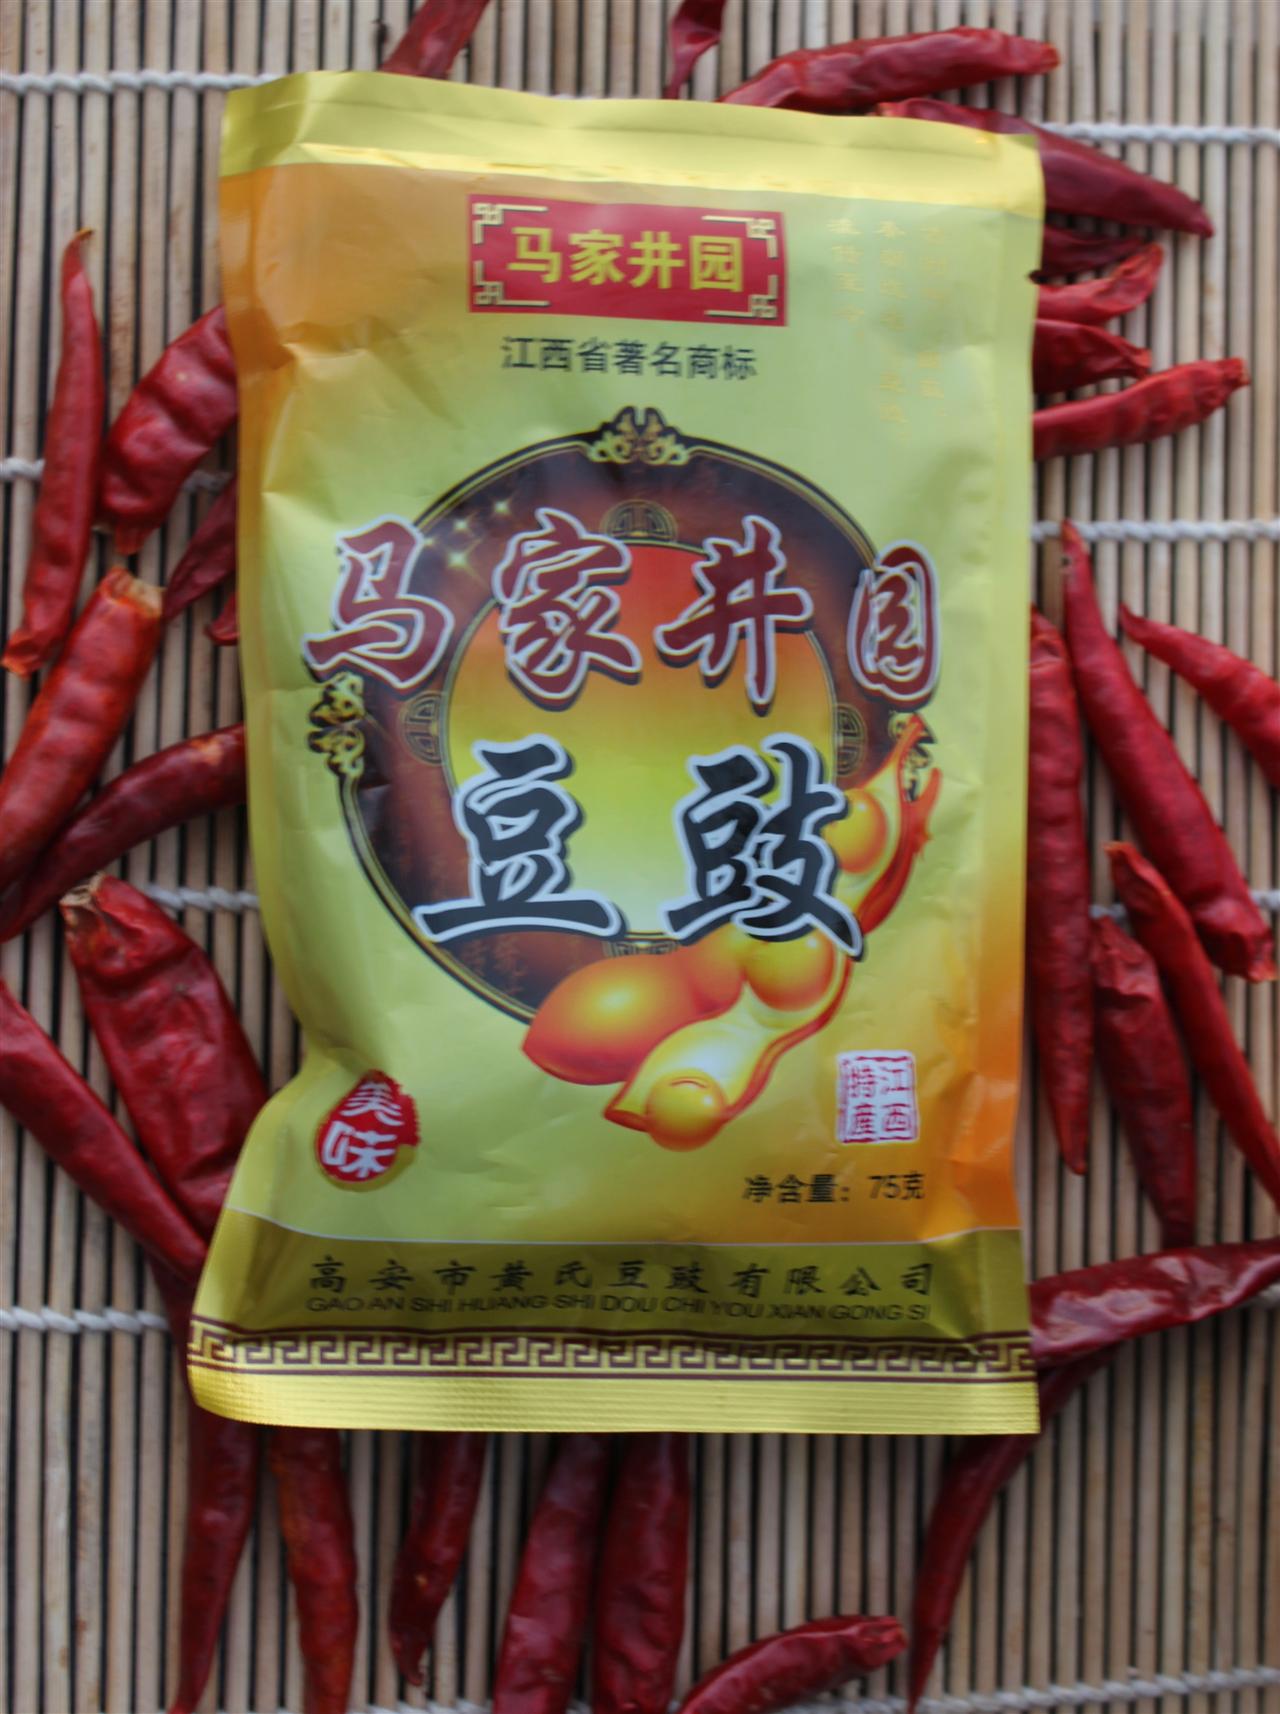 03 宜春各地特产大全[摘要]马家井园豆豉是江西省著名商标,有甜